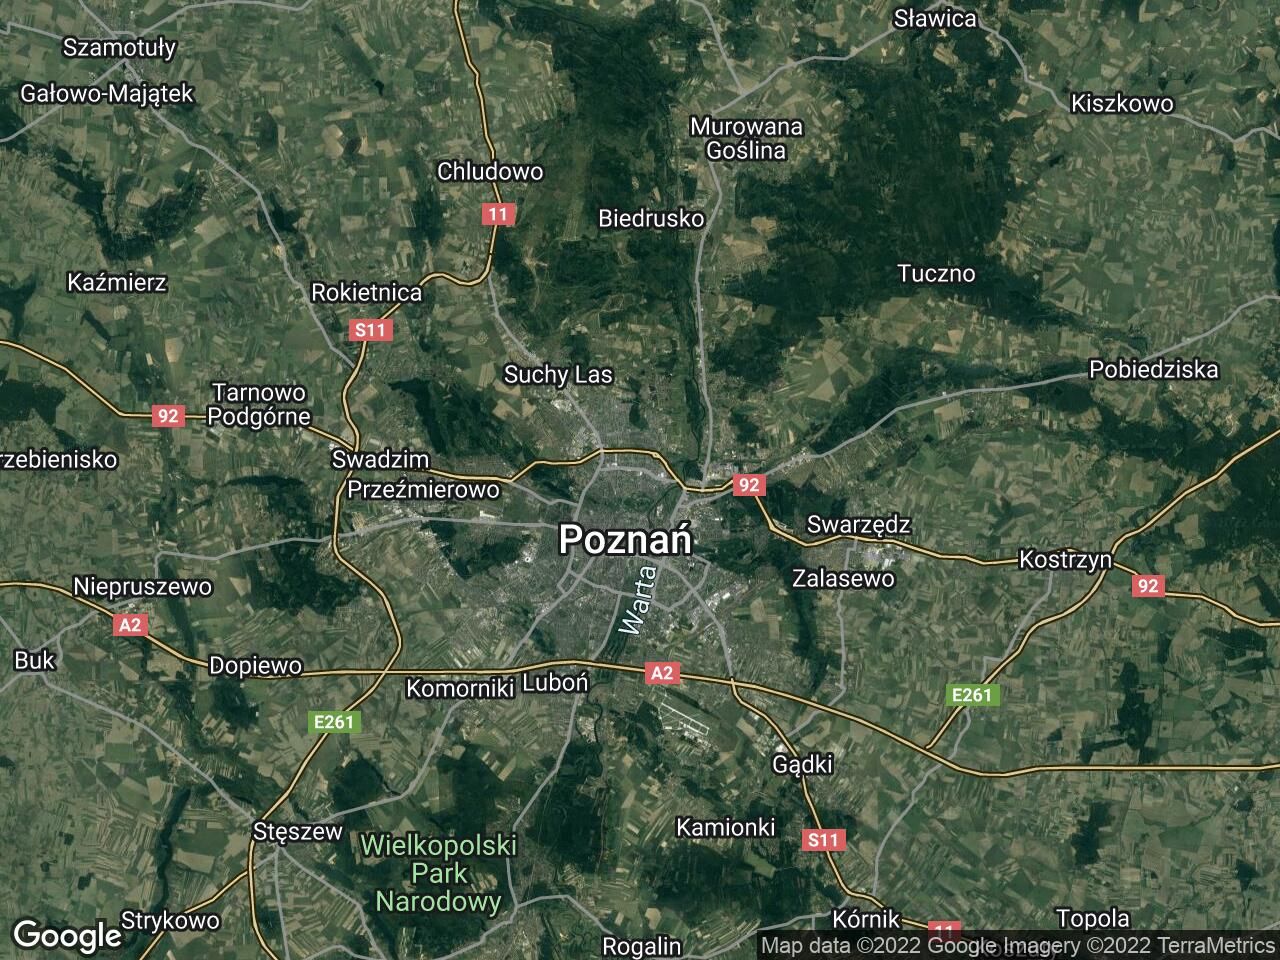 Lokal Poznań Winogrady